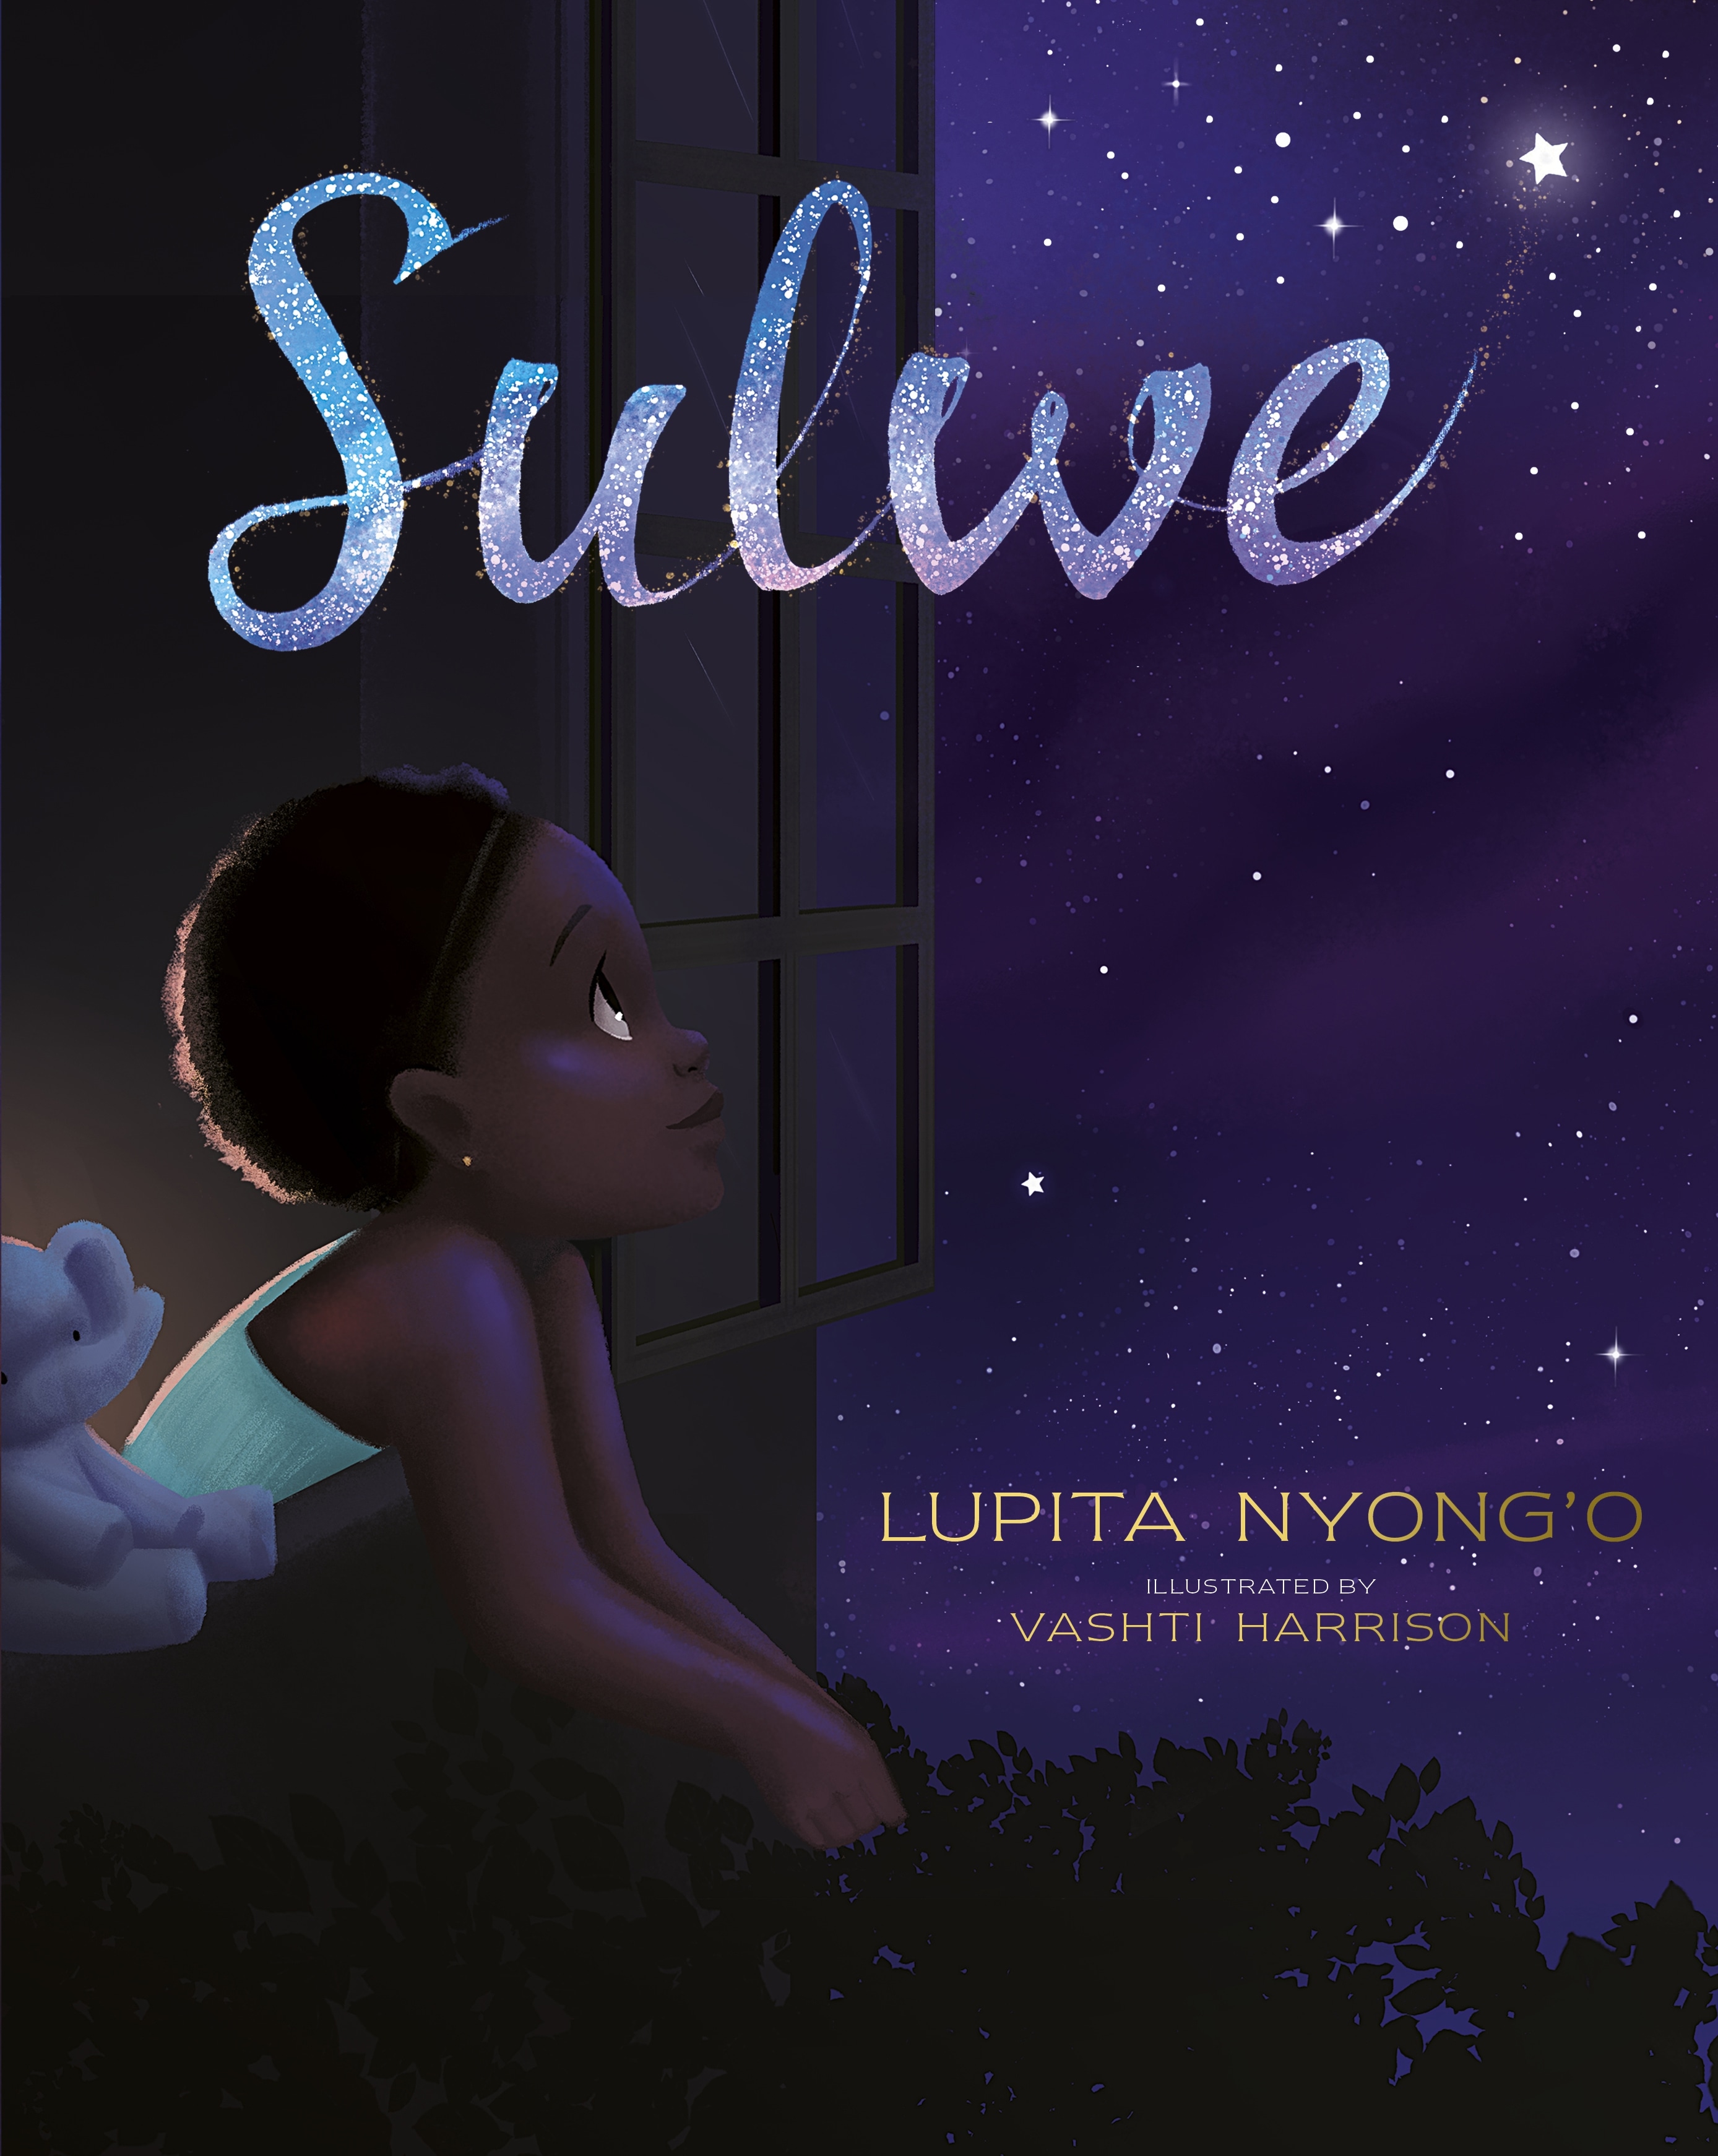 Book “Sulwe” by Lupita Nyong'o, Vashti Harrison — October 15, 2019